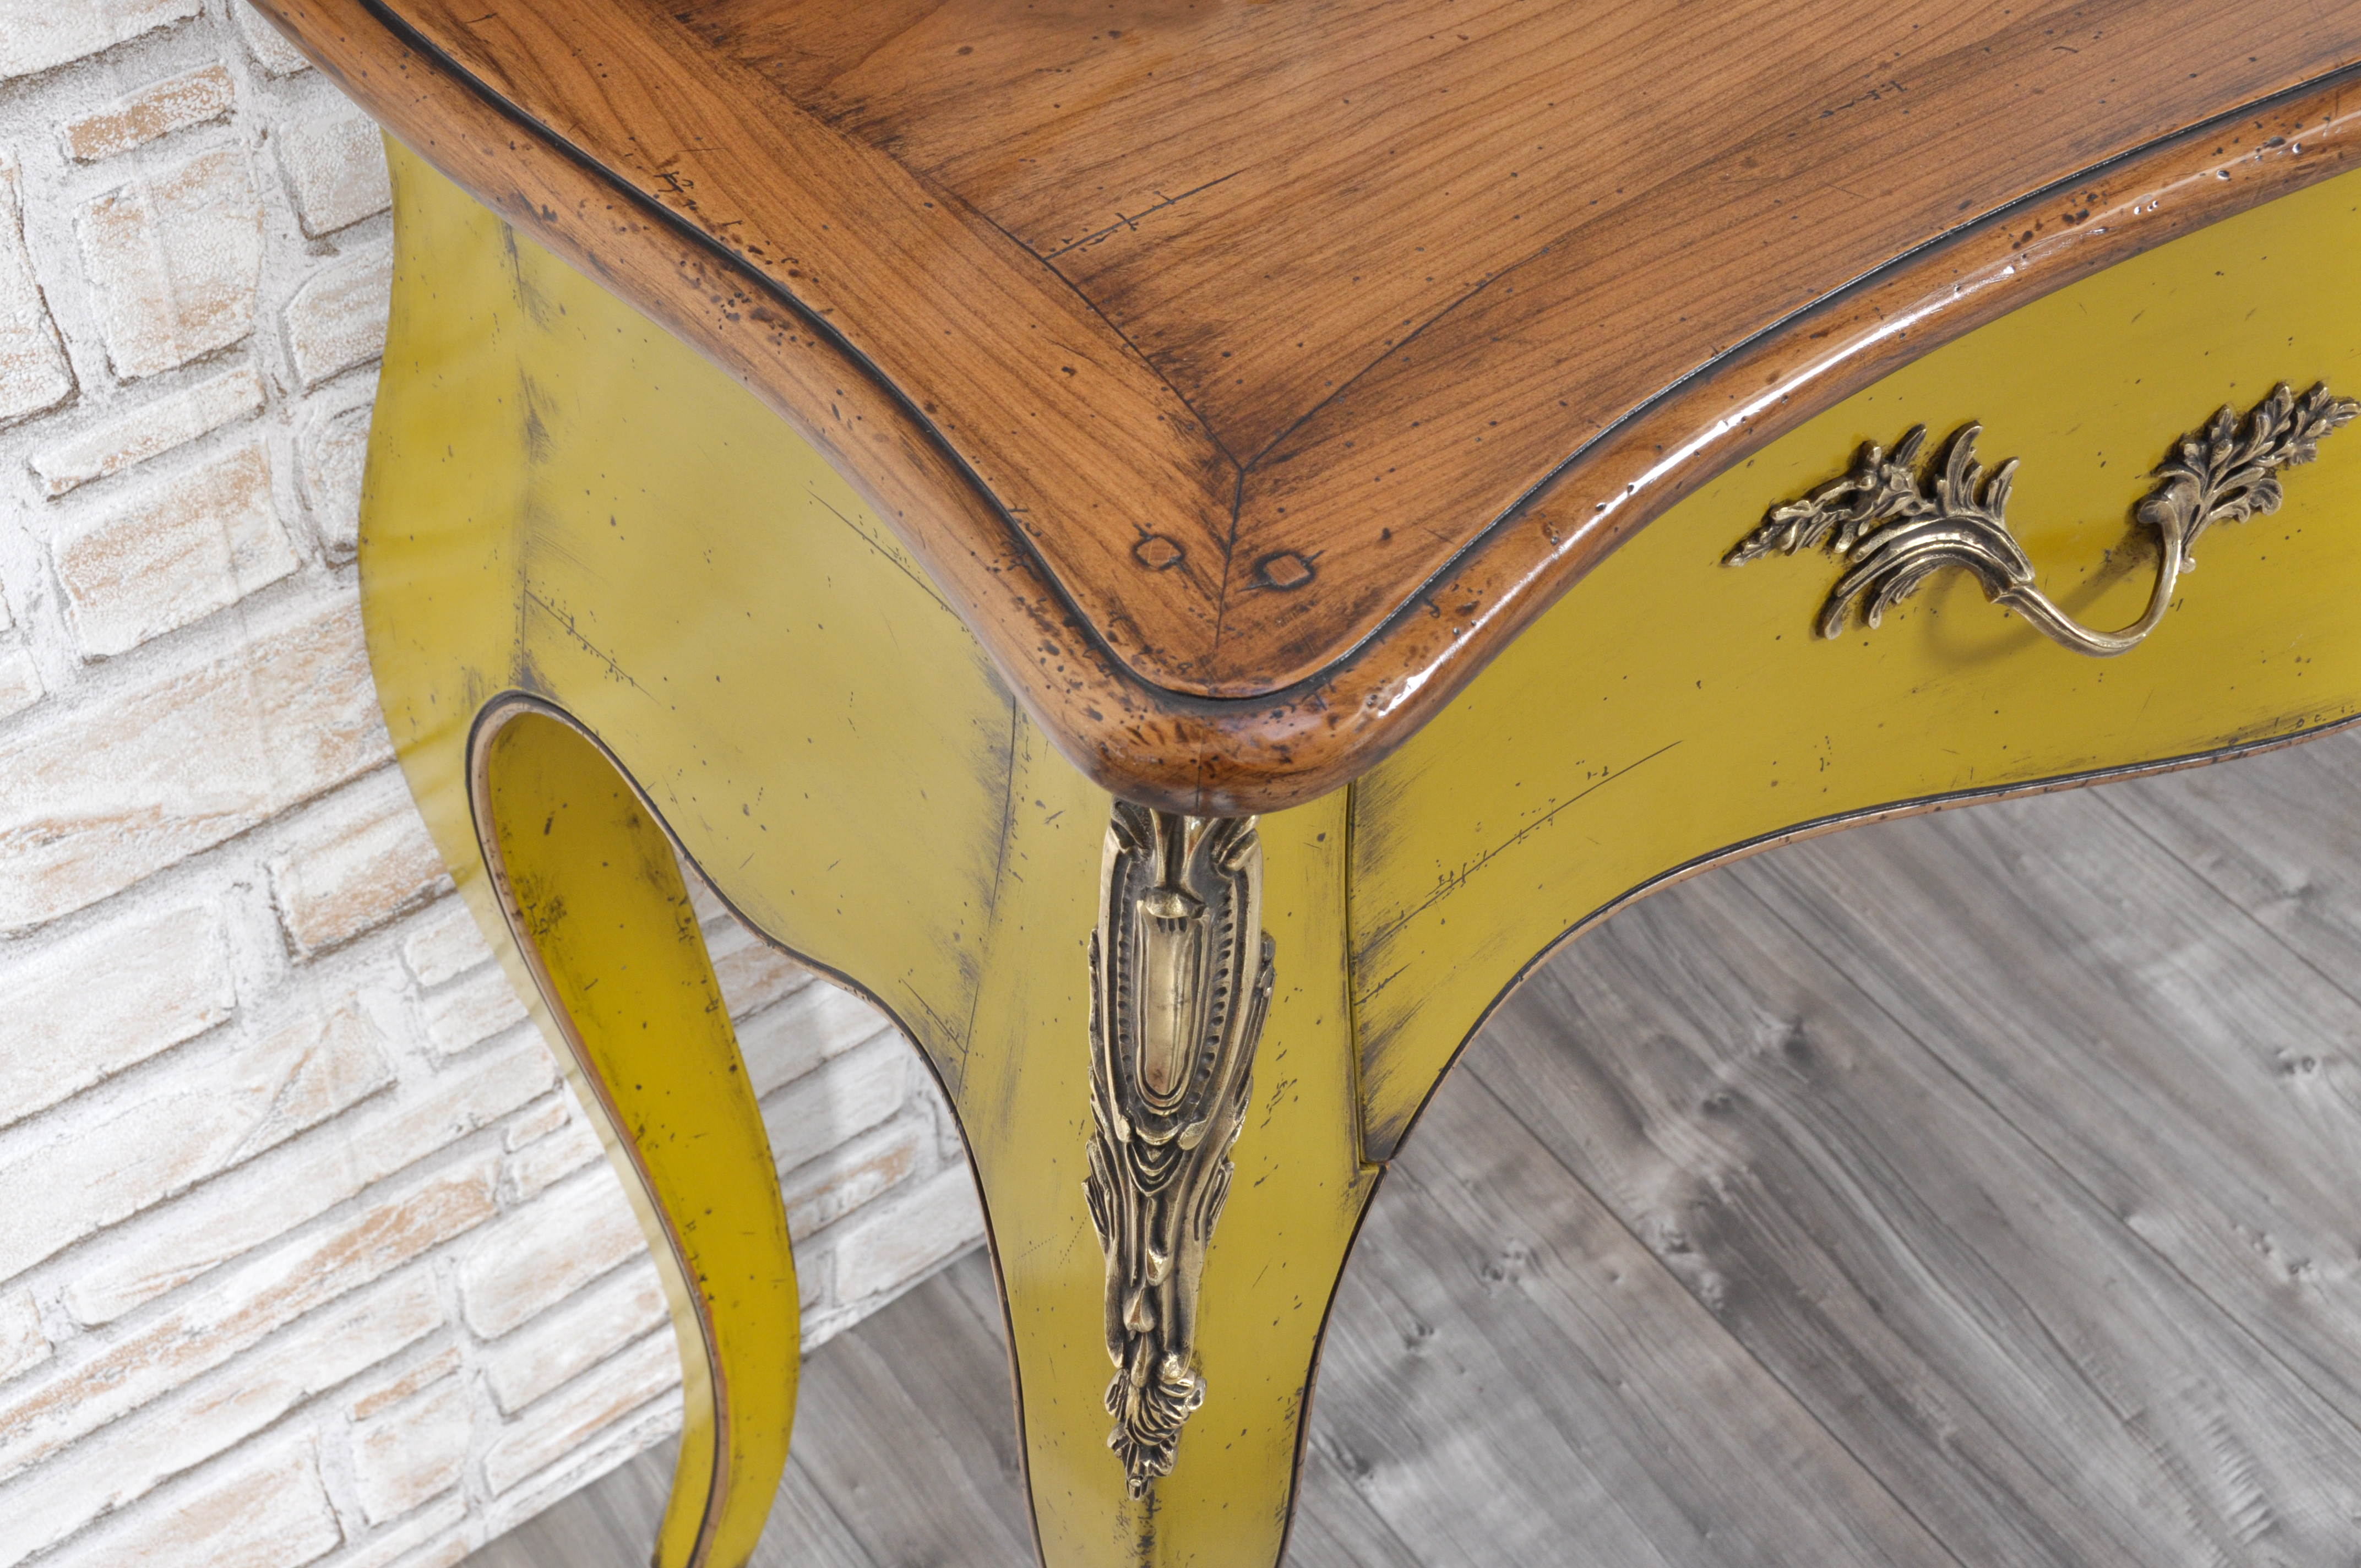 piano consolle lucidato tonalità miele con parte sotto laccata color giallo anticato realizzata a mano